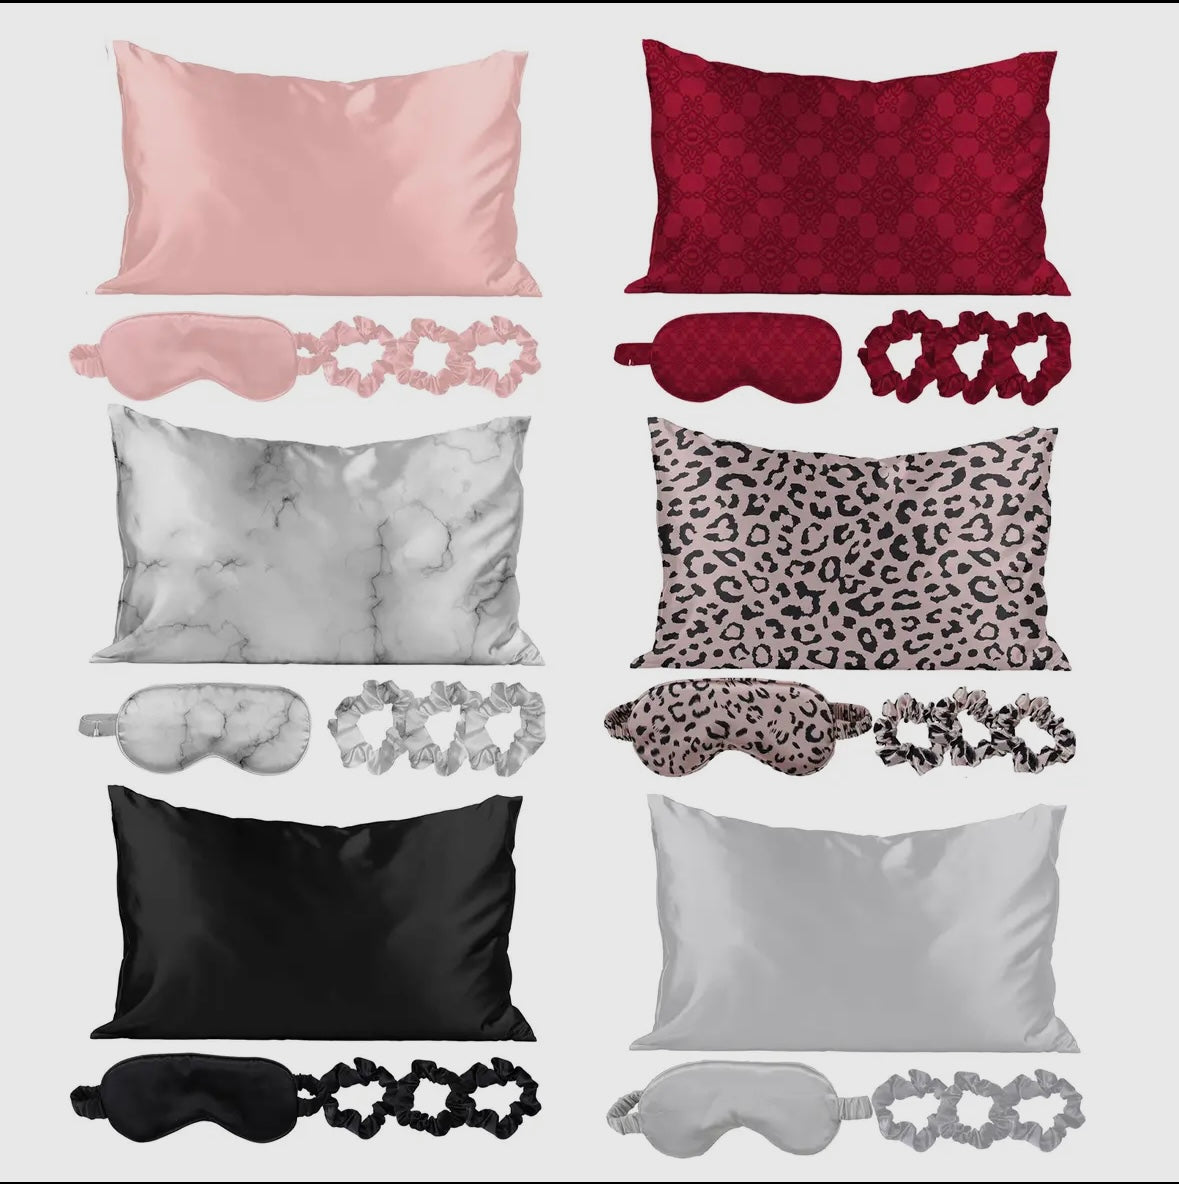 Satin 5 Piece Pillowcase Set - Multiple Colors